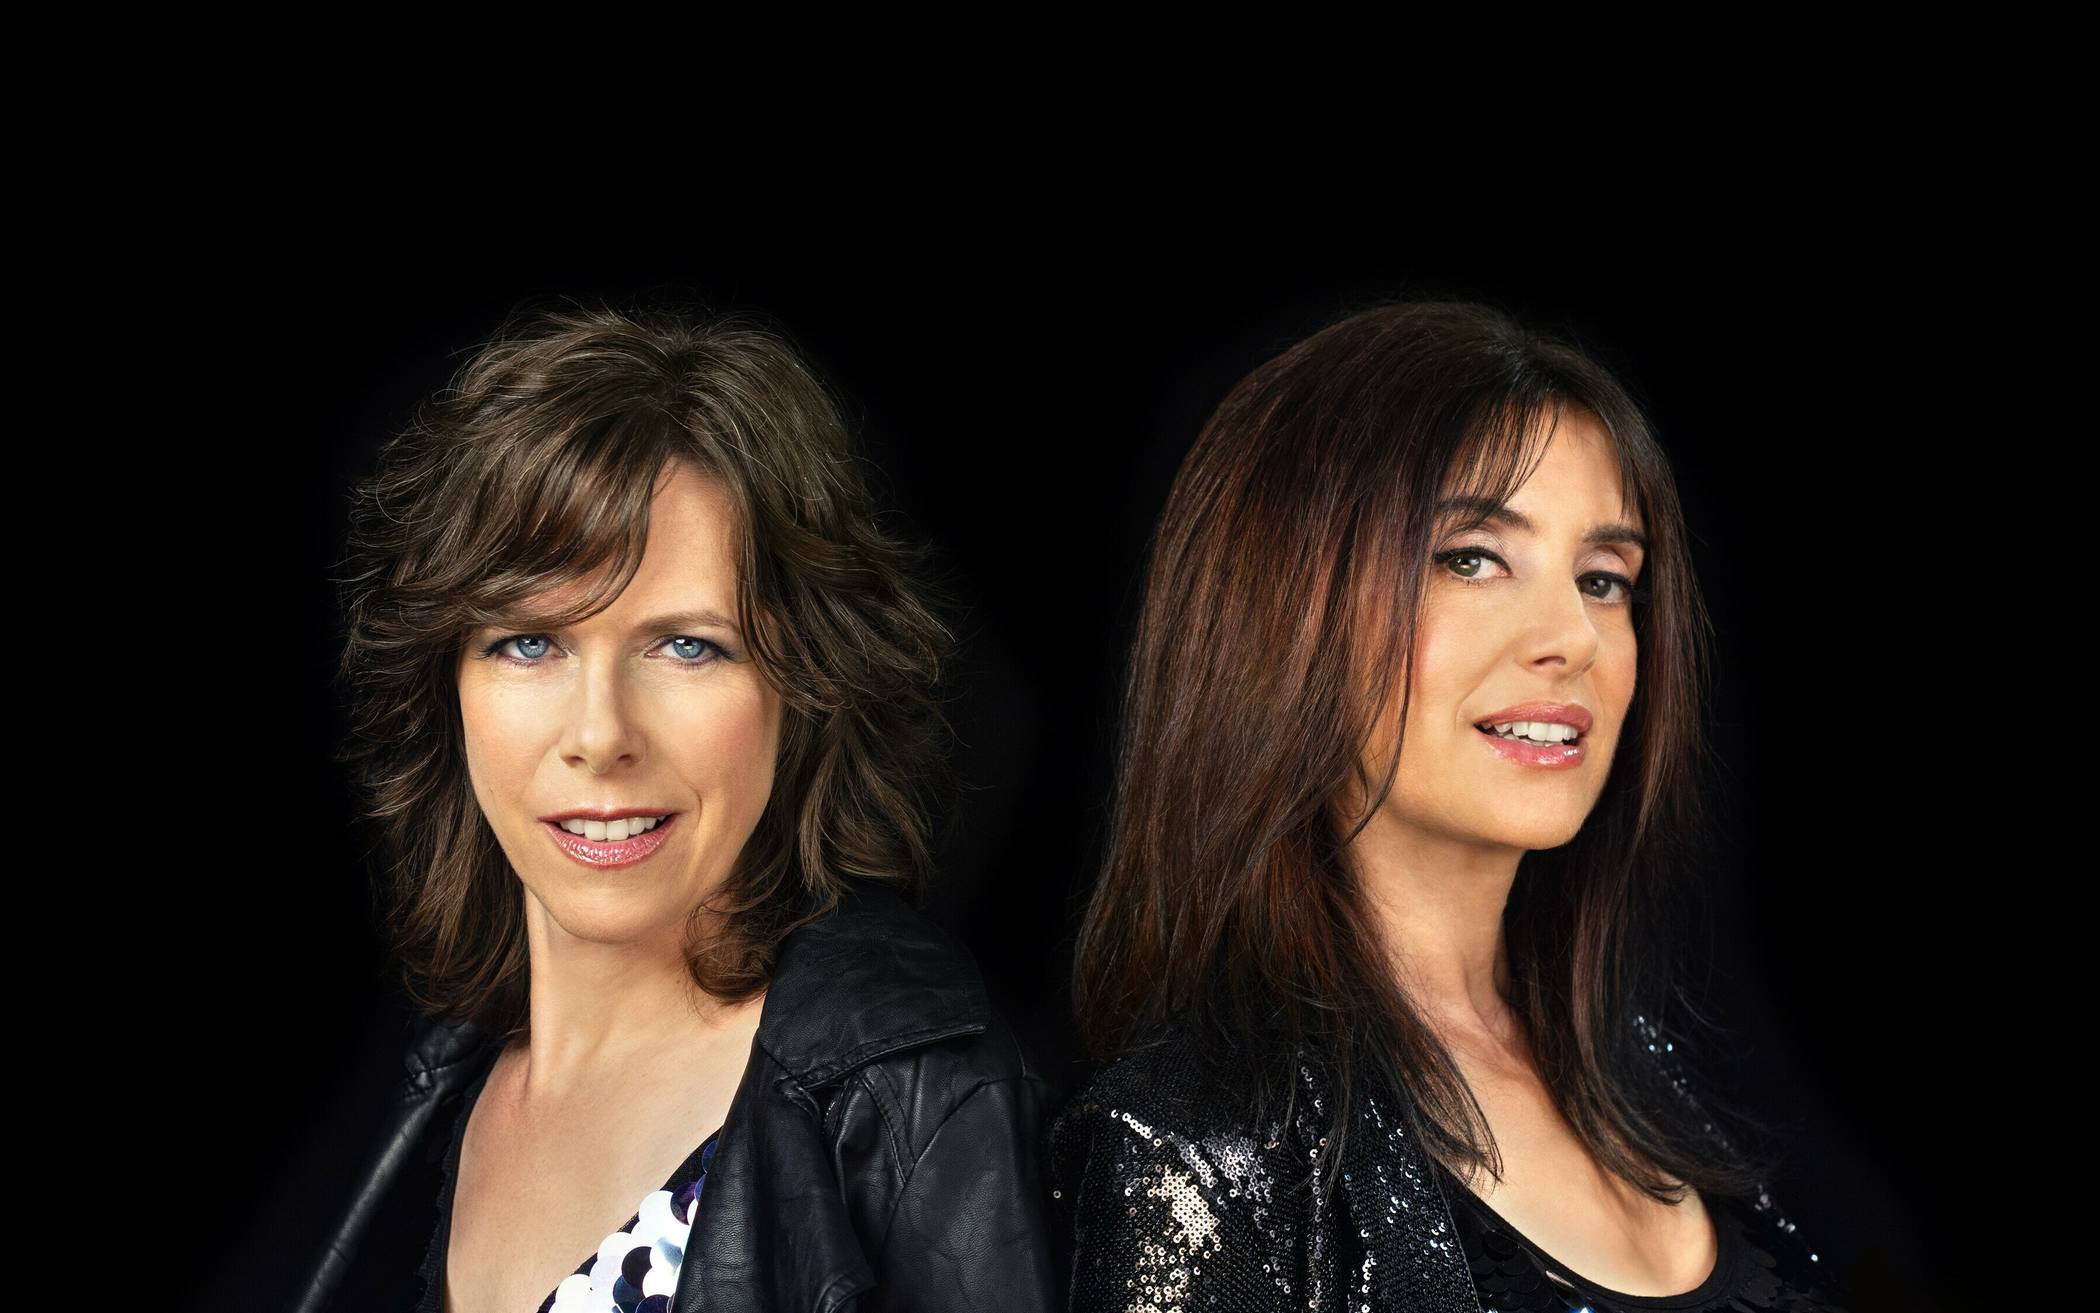  Anlässlich des Internationalen Frauentages gastieren Nicola Materne, Christiane Hagedorn und Martin Scholz mit ihrer Musik-Show „Her Song“ in Erkrath. 